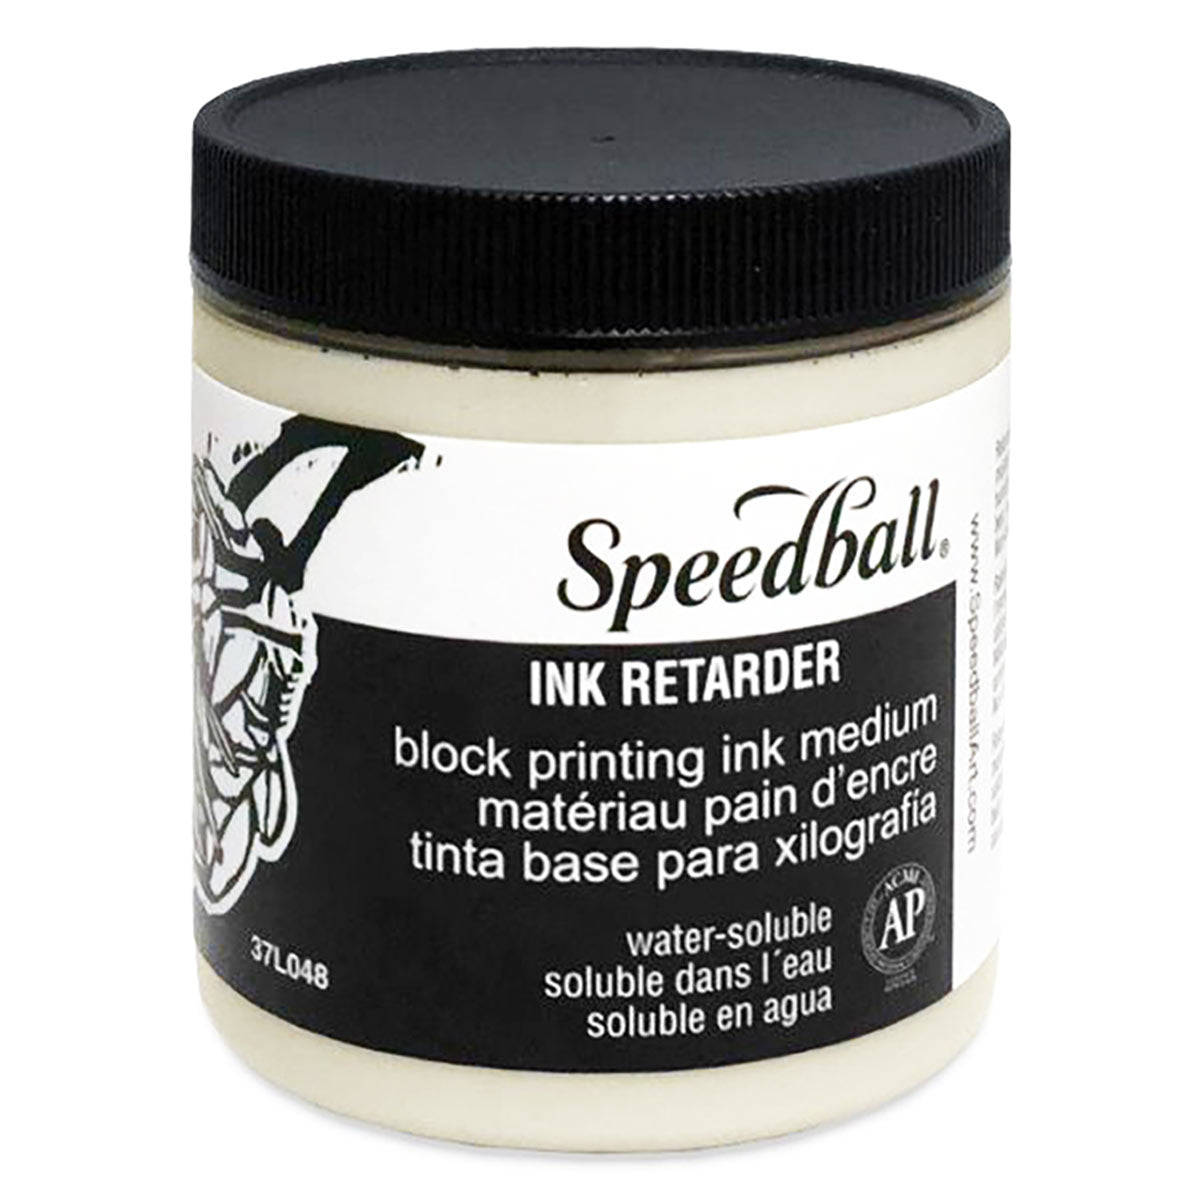 Speedball - in water oplosbaar blokdrukken inktvertrager 236 ml (8oz)